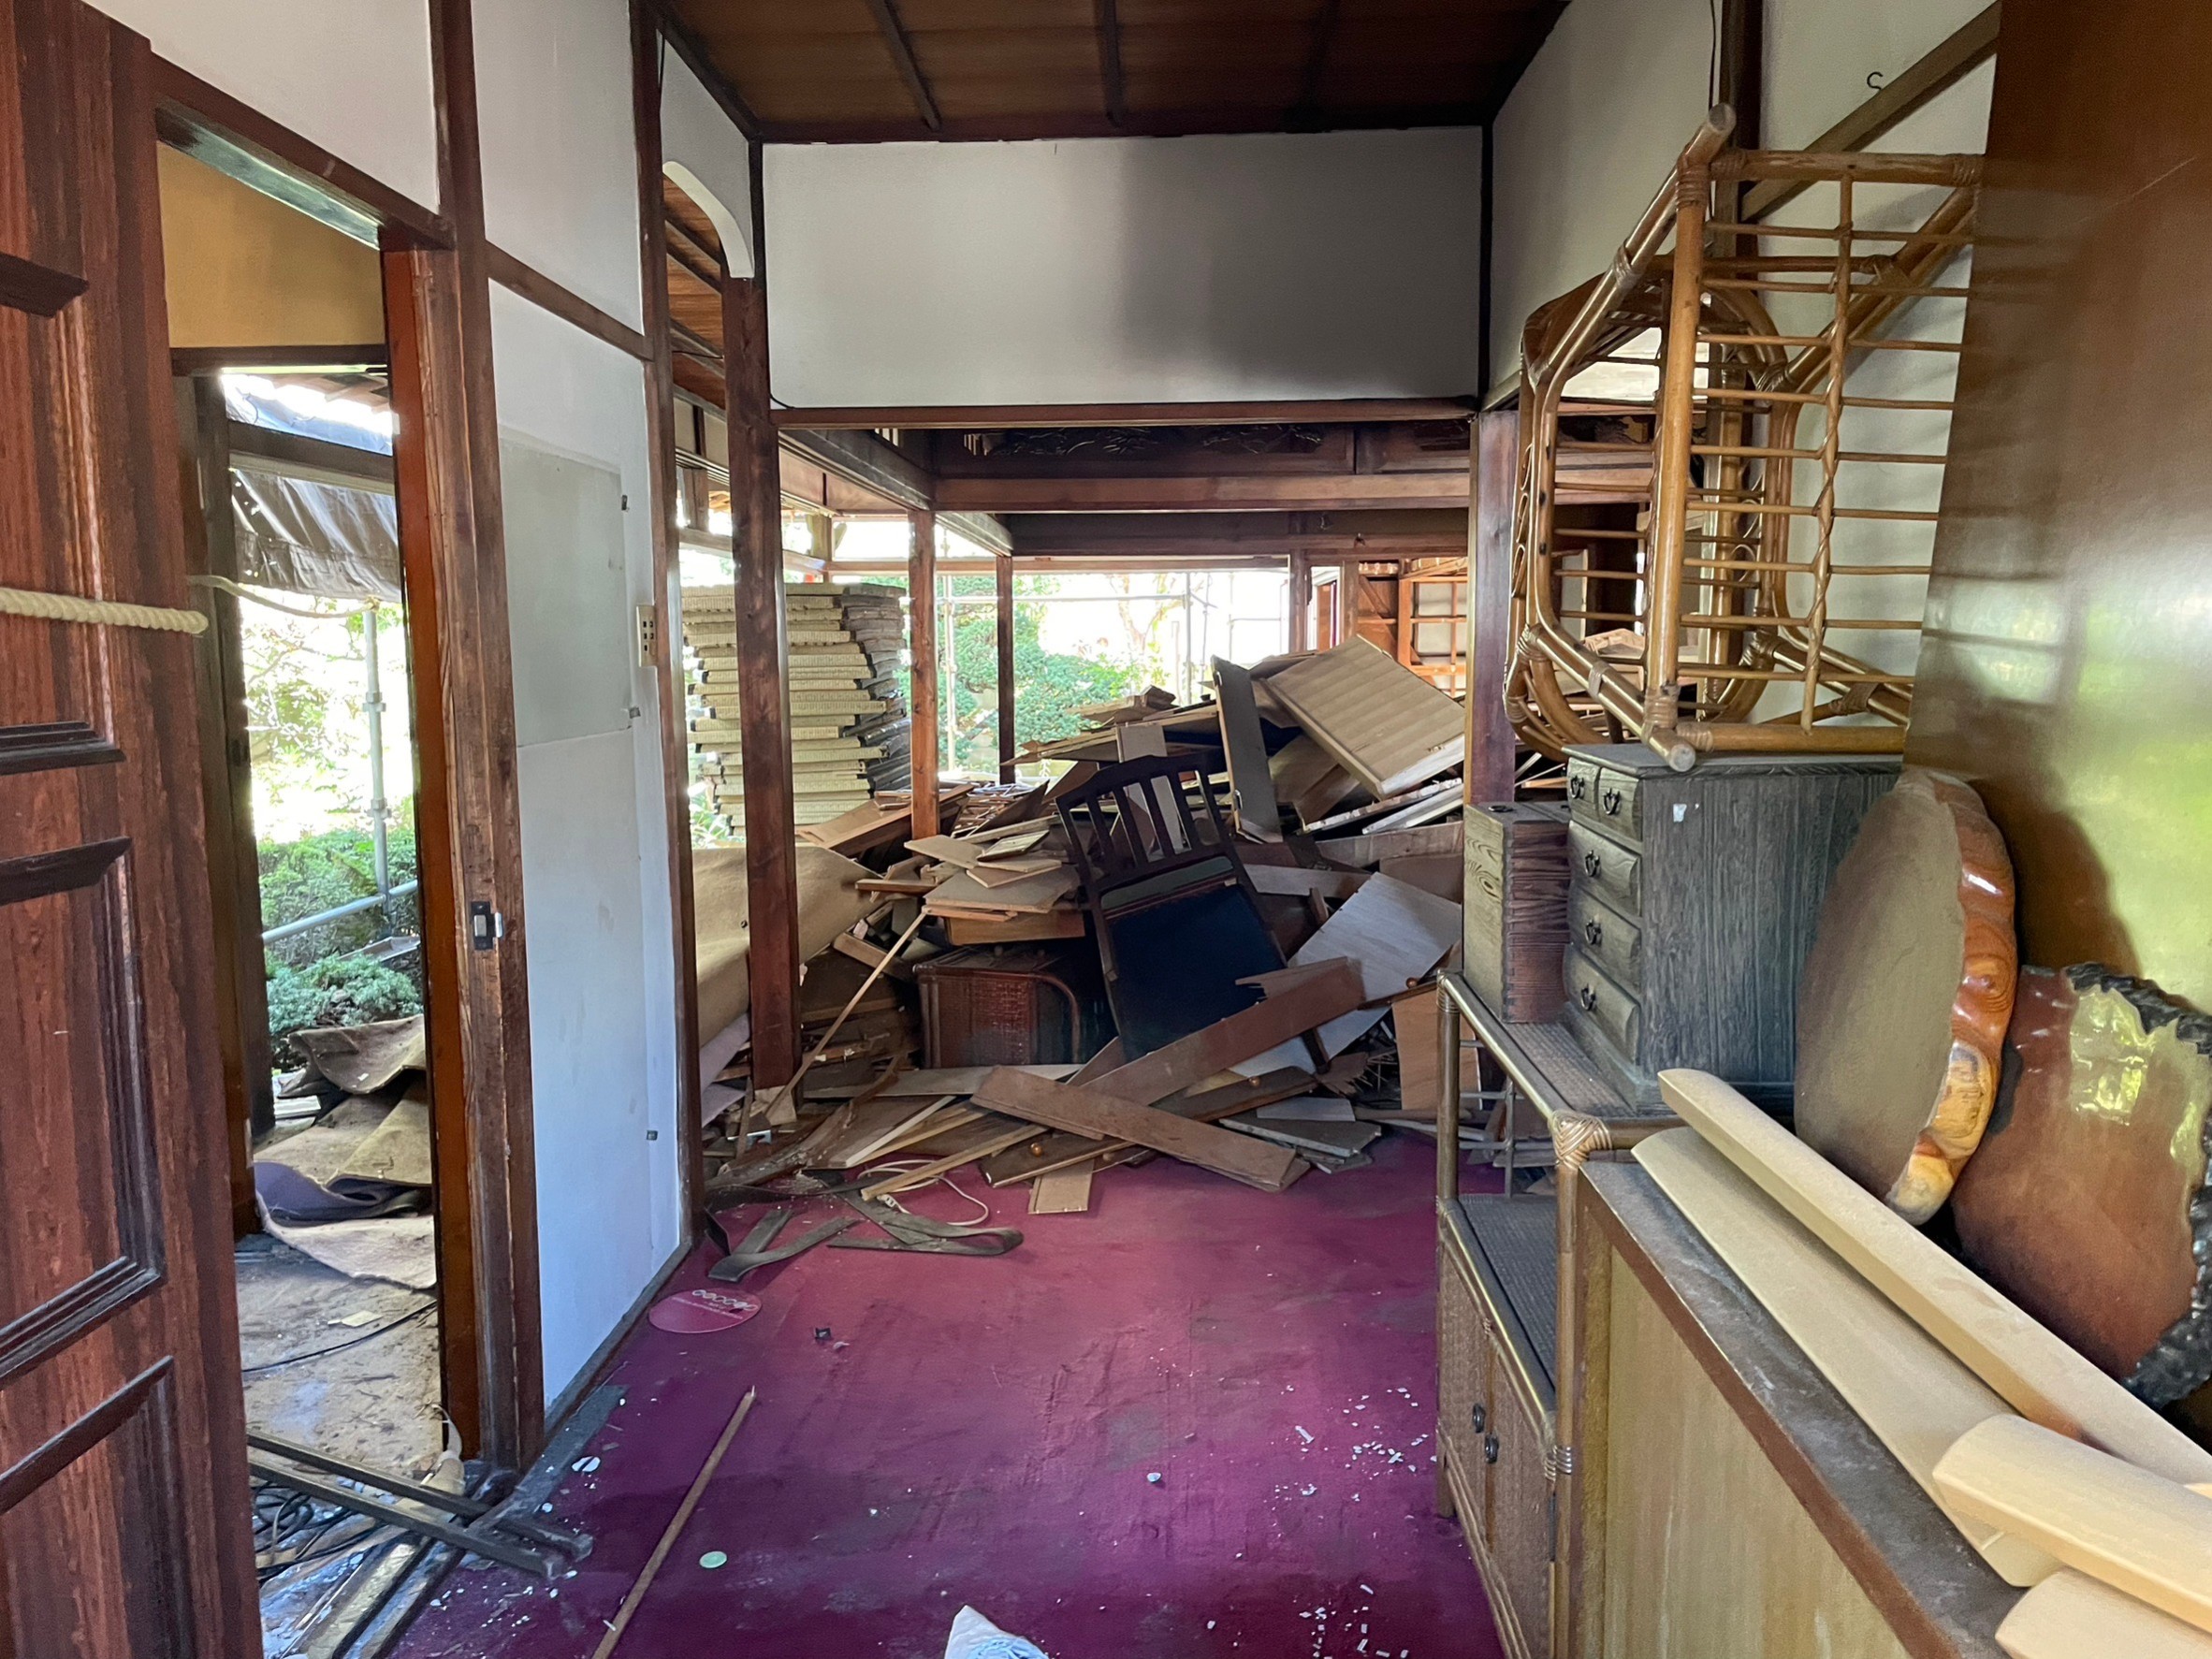 埼玉県草加市の部屋の片付けと不用品回収および解体工事，解体が始まった室内の様子